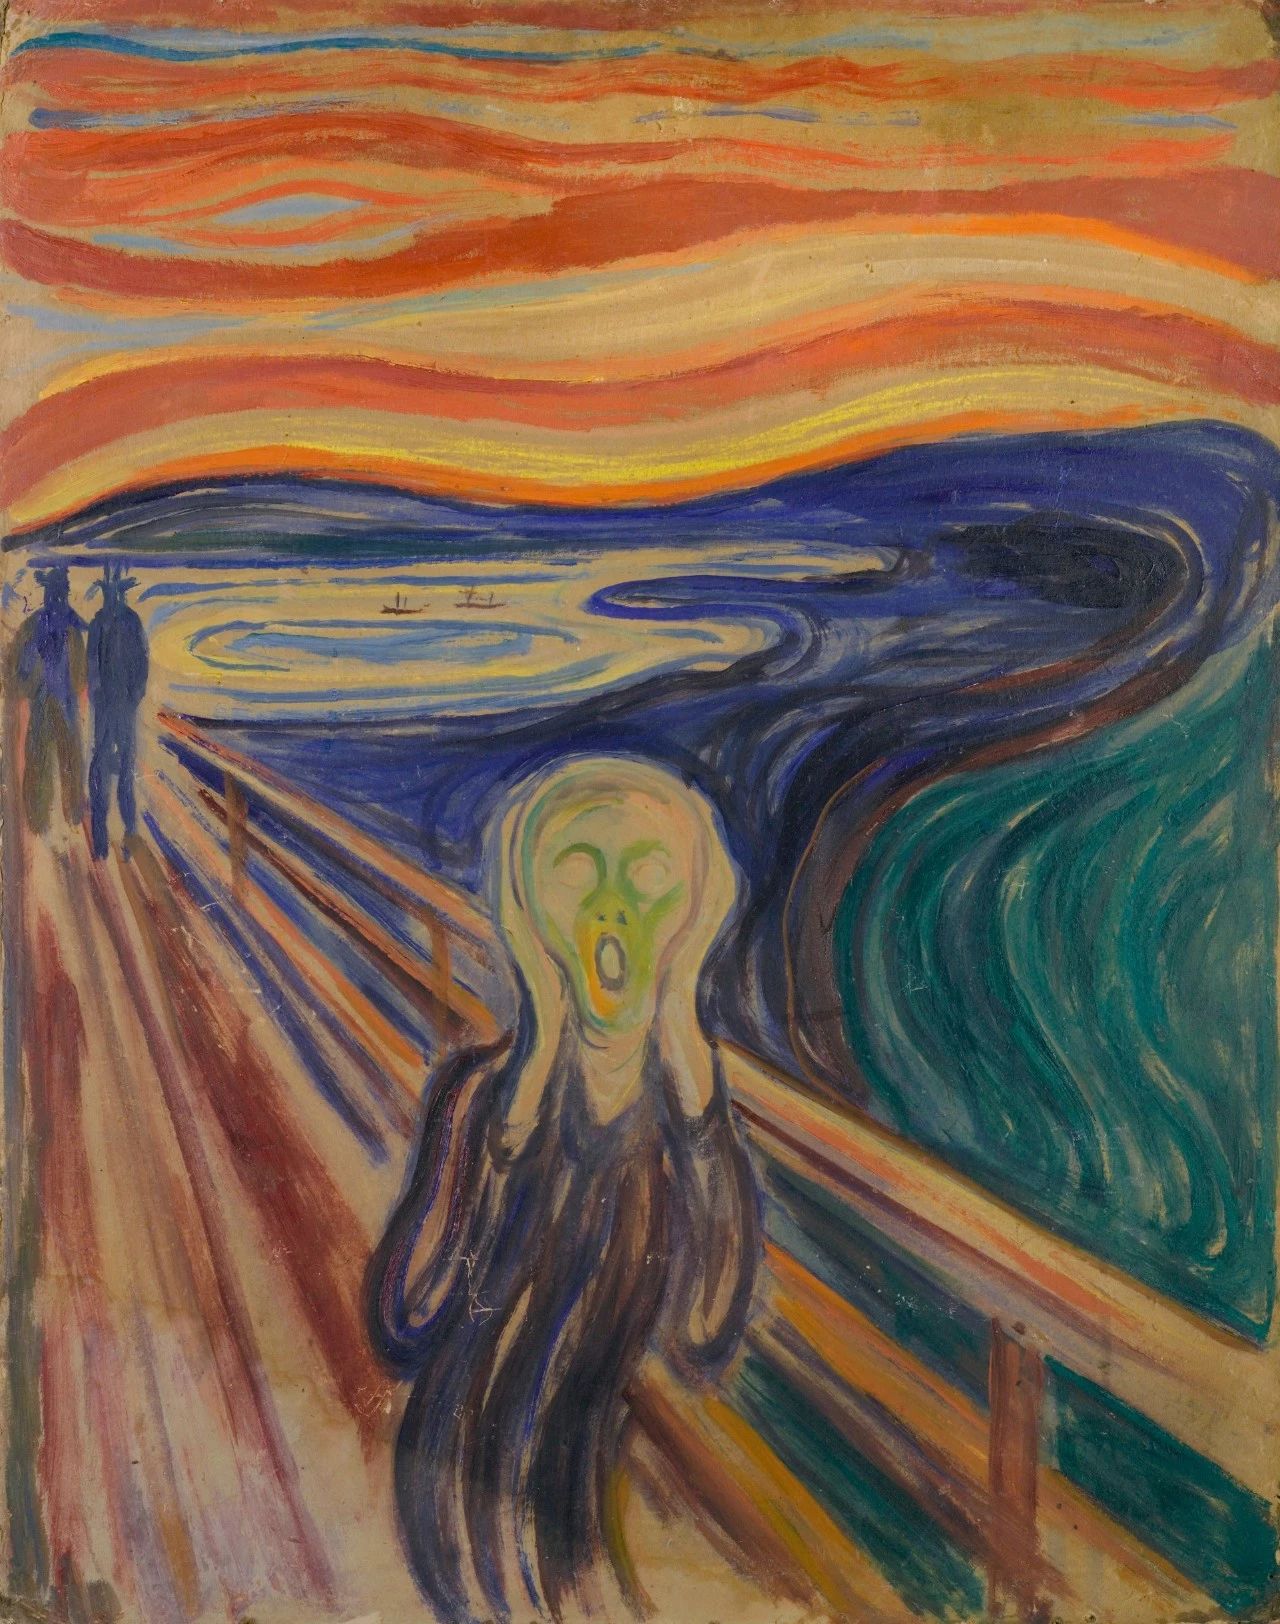 【雅昌专稿】大英博物馆爱德华·蒙克展览:他在声嘶力竭地呐喊什么?